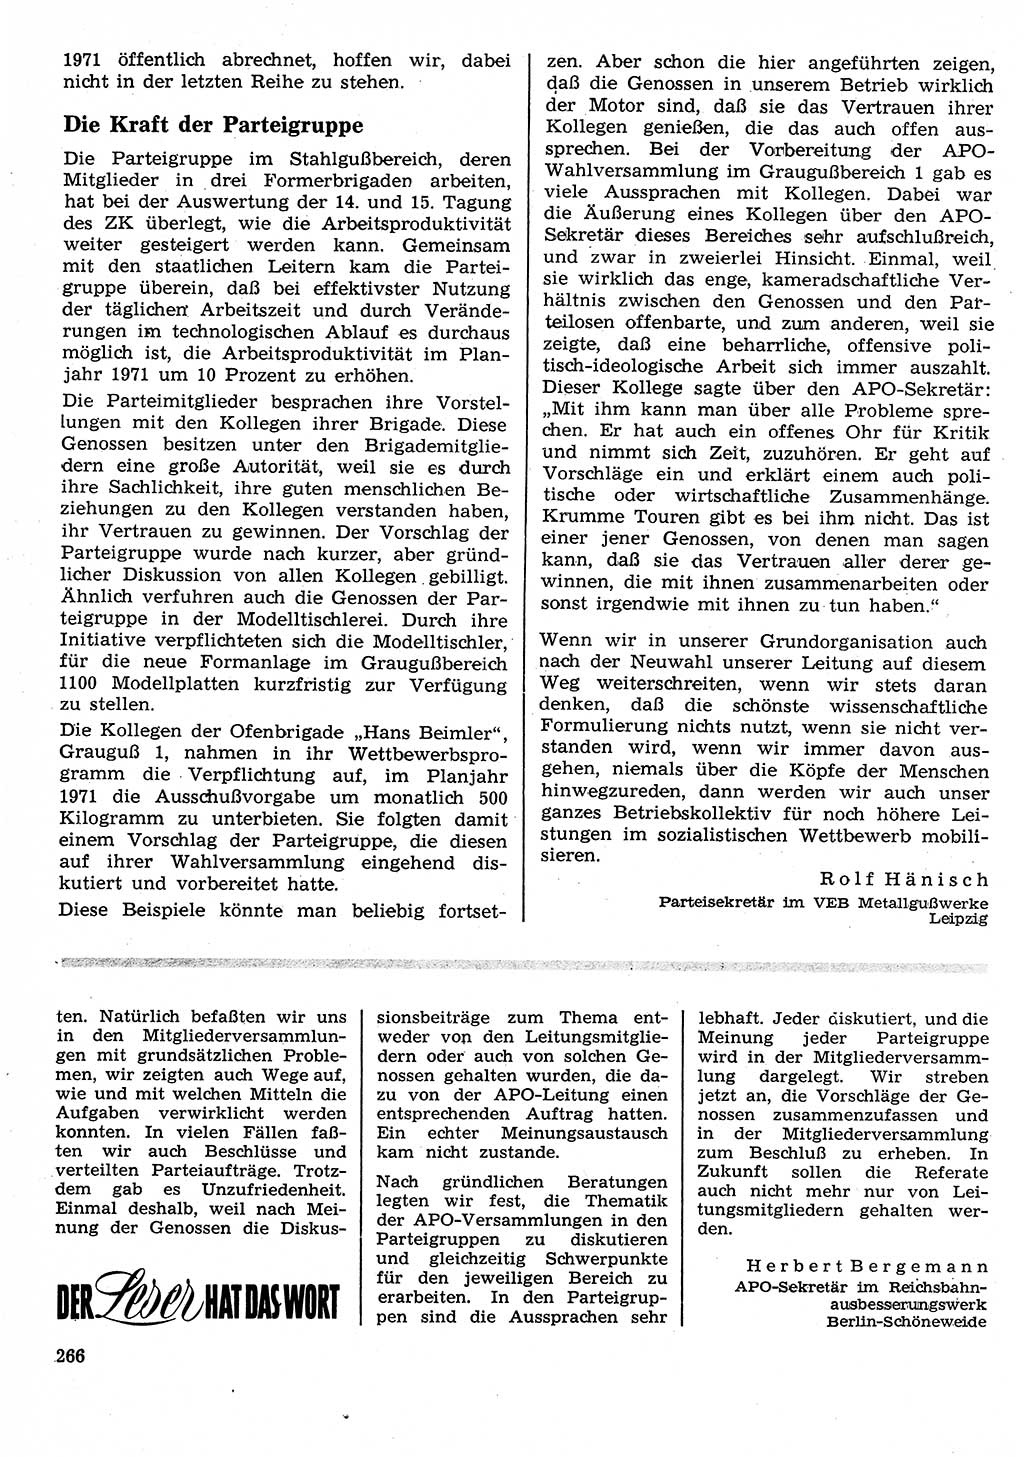 Neuer Weg (NW), Organ des Zentralkomitees (ZK) der SED (Sozialistische Einheitspartei Deutschlands) für Fragen des Parteilebens, 26. Jahrgang [Deutsche Demokratische Republik (DDR)] 1971, Seite 266 (NW ZK SED DDR 1971, S. 266)